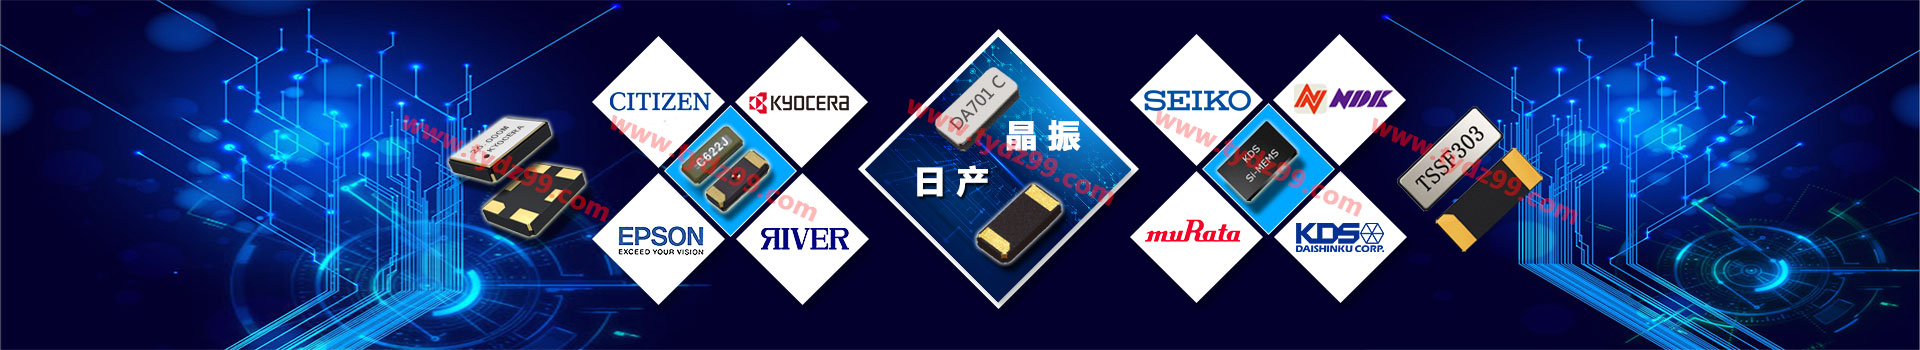 统一电子正规授权代理日本进口晶振品牌-免费供样及产品解决方案0755-27837683